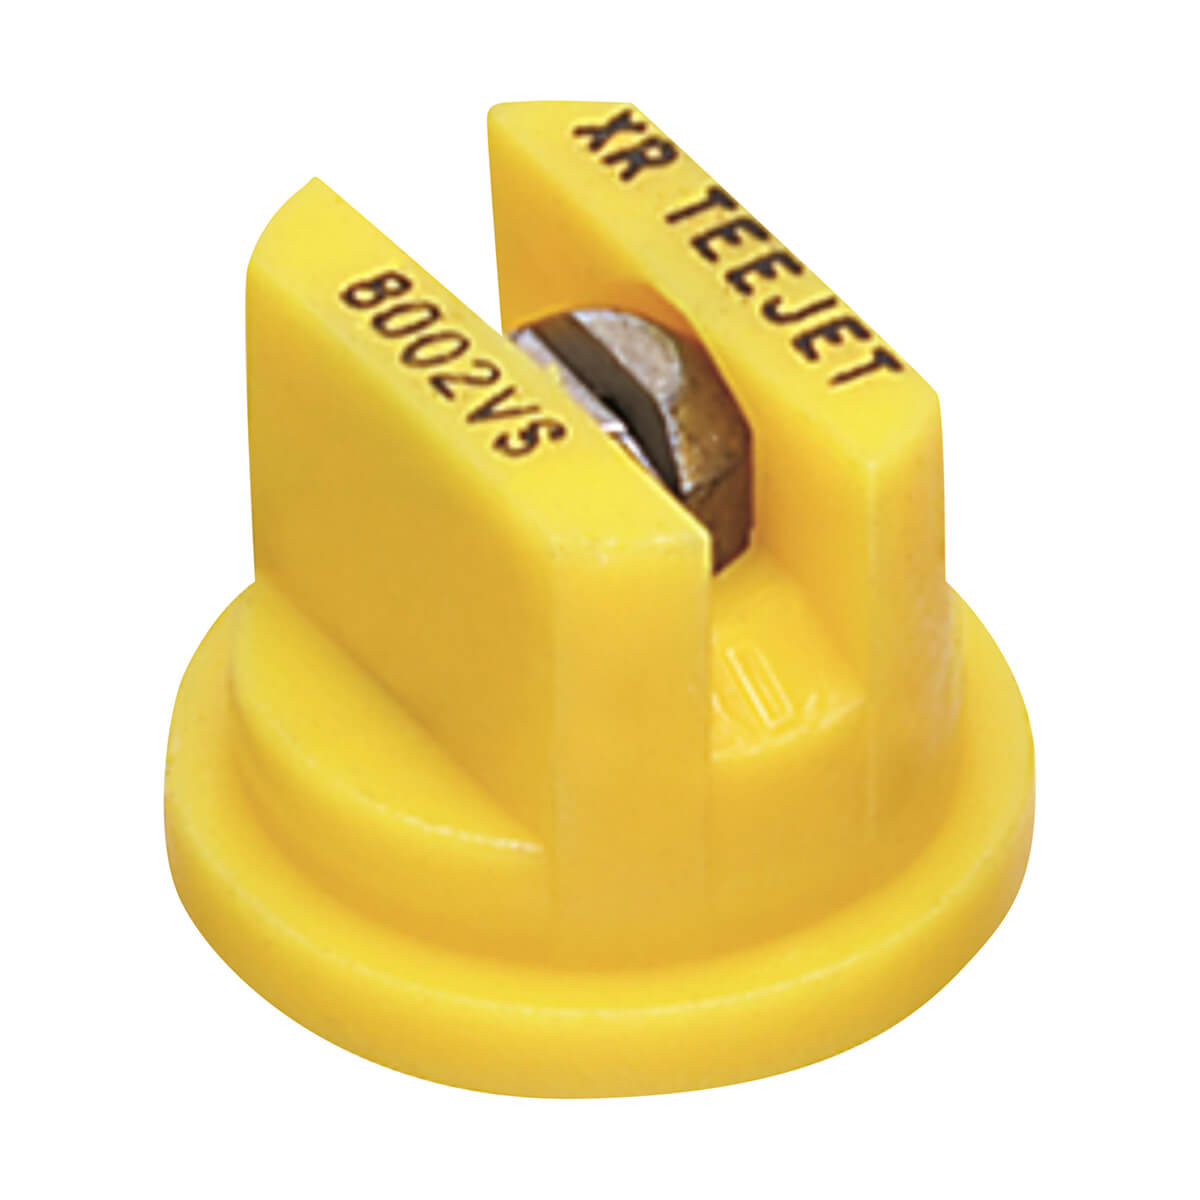 Teejet XR 80 Degree Extended Range Spray Tip - Yellow - 4 Pack